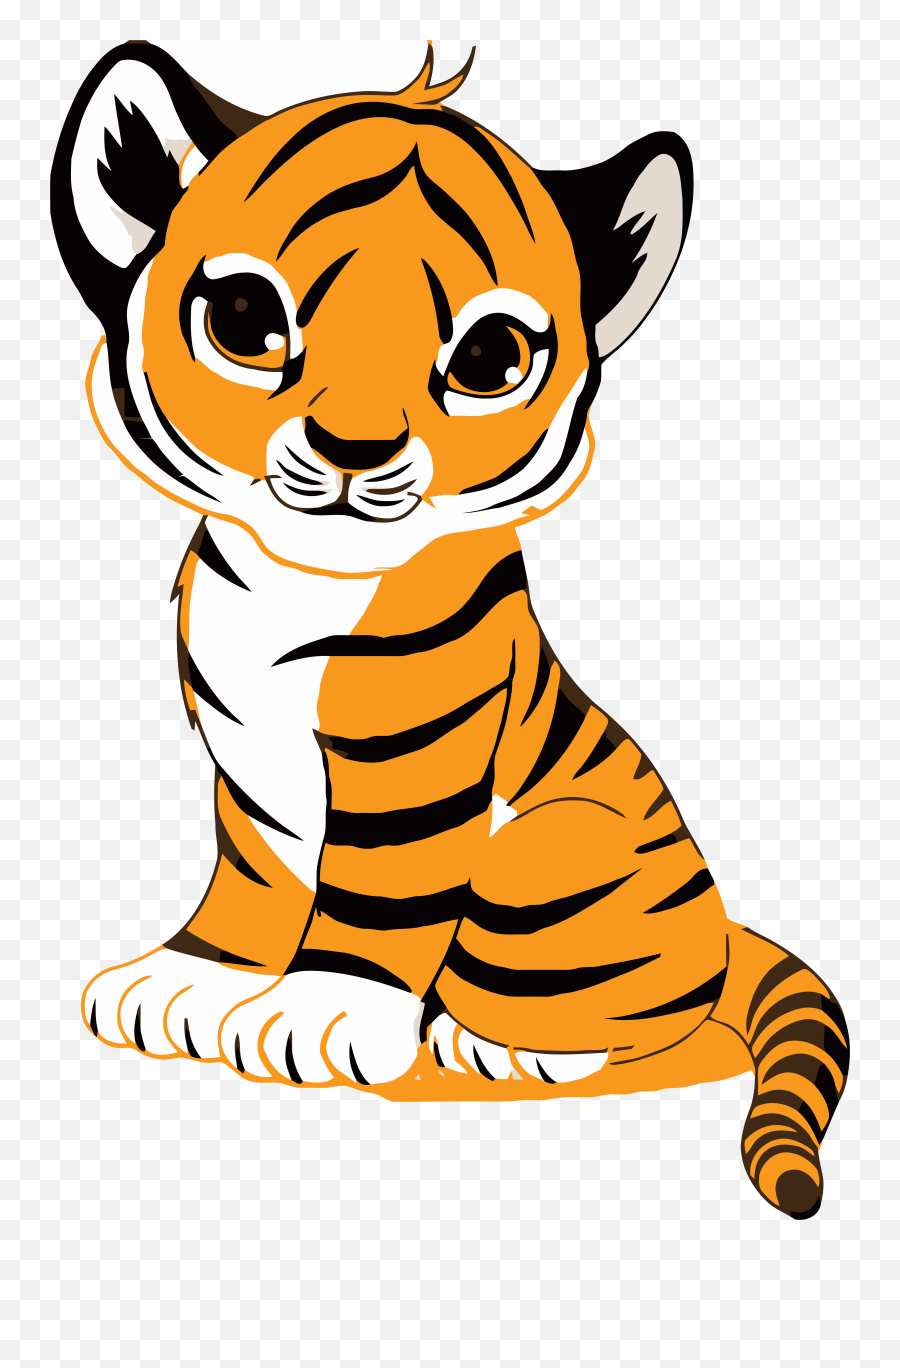 Tigger Face Clip Art Royalty Free Illustration - Easy Cute Tiger Drawing Png,Tigger Png